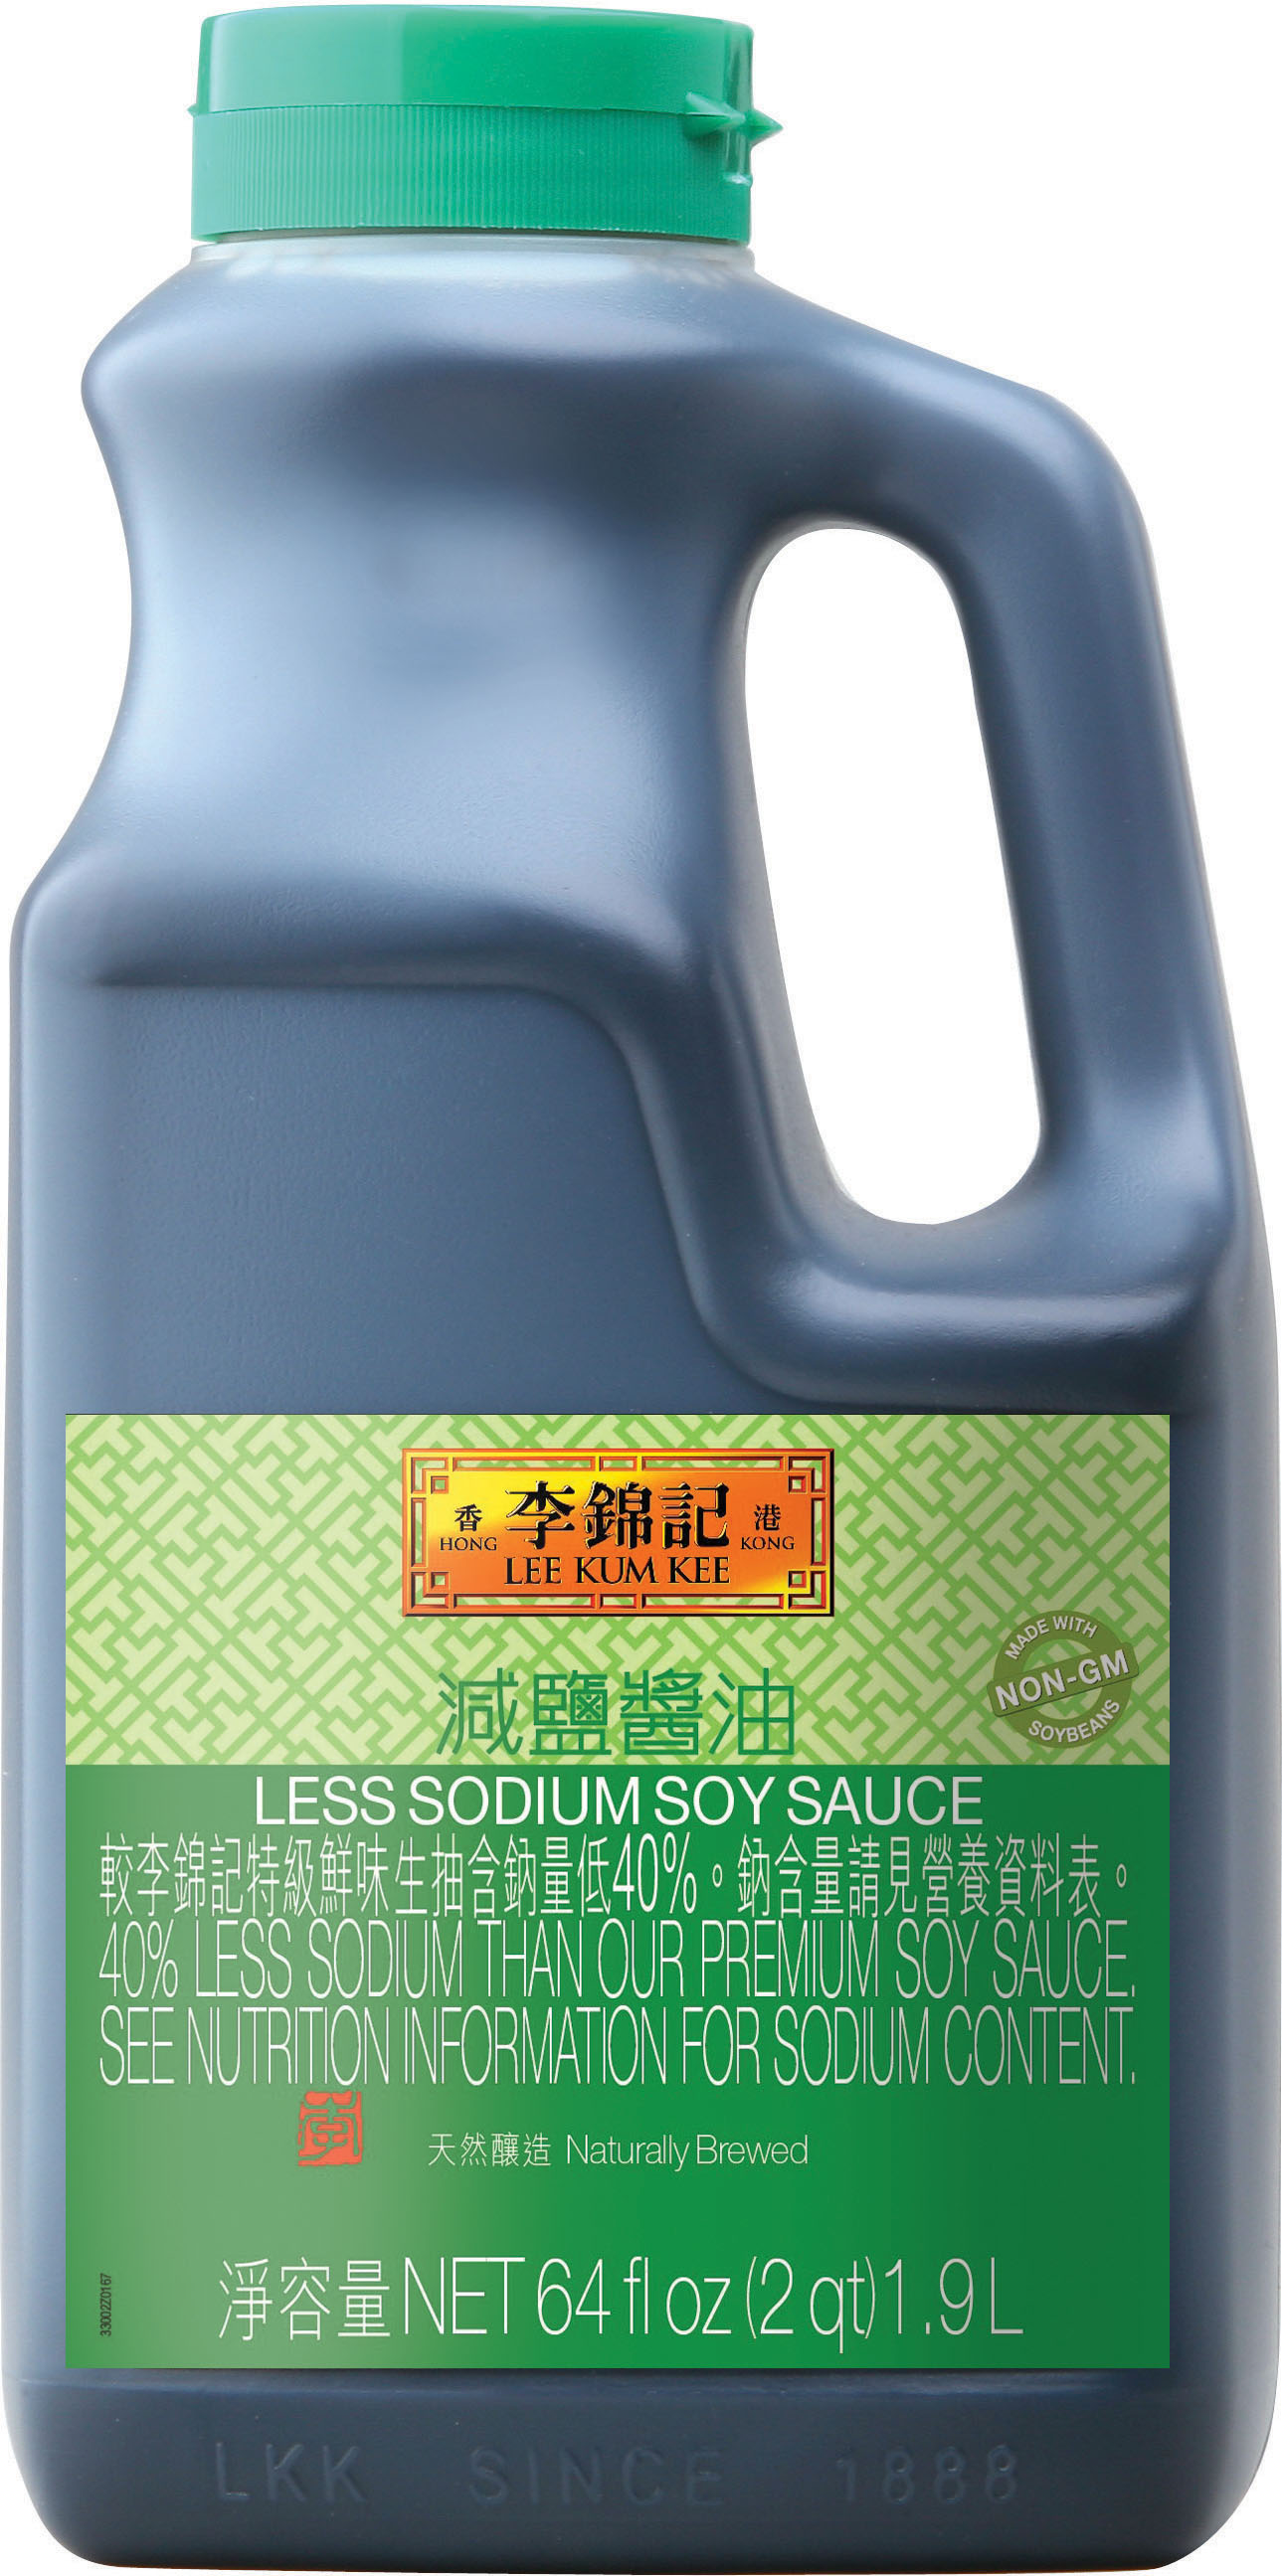 減鹽醬油6 4 fl oz (2 qt) 1.9 L, 桶裝